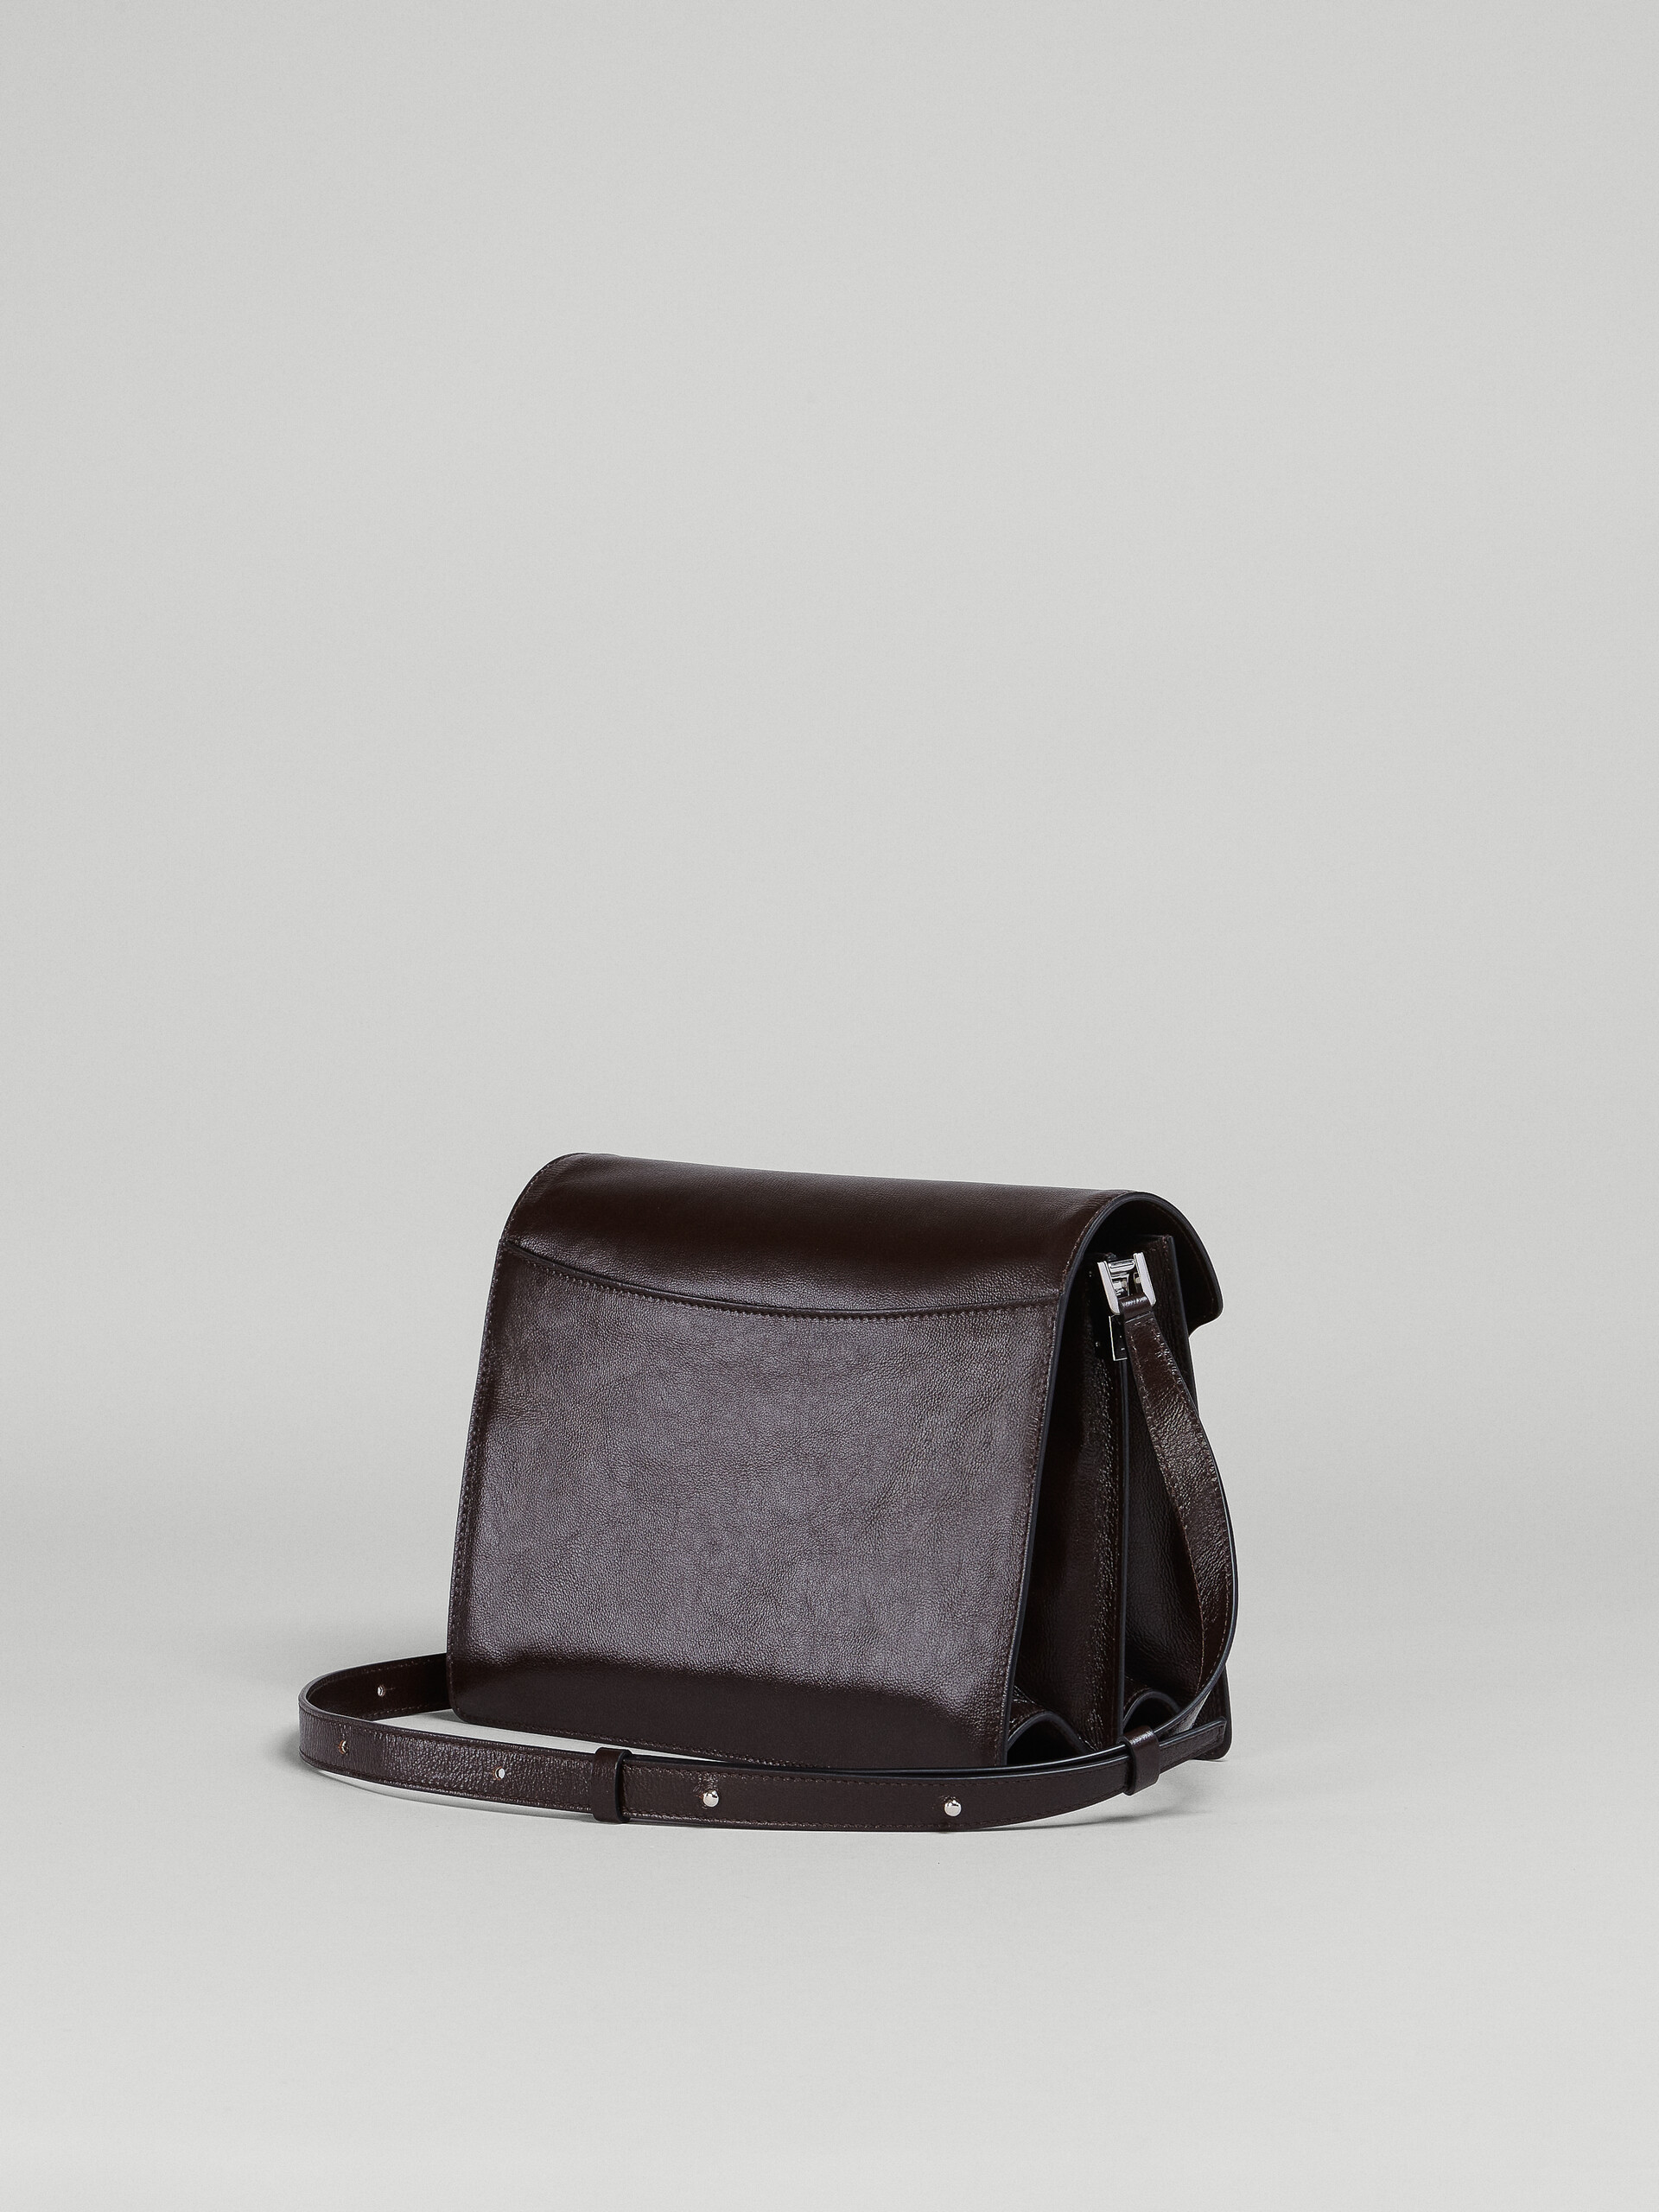 Trunk Soft Large Bag in black leather - Shoulder Bags - Image 2